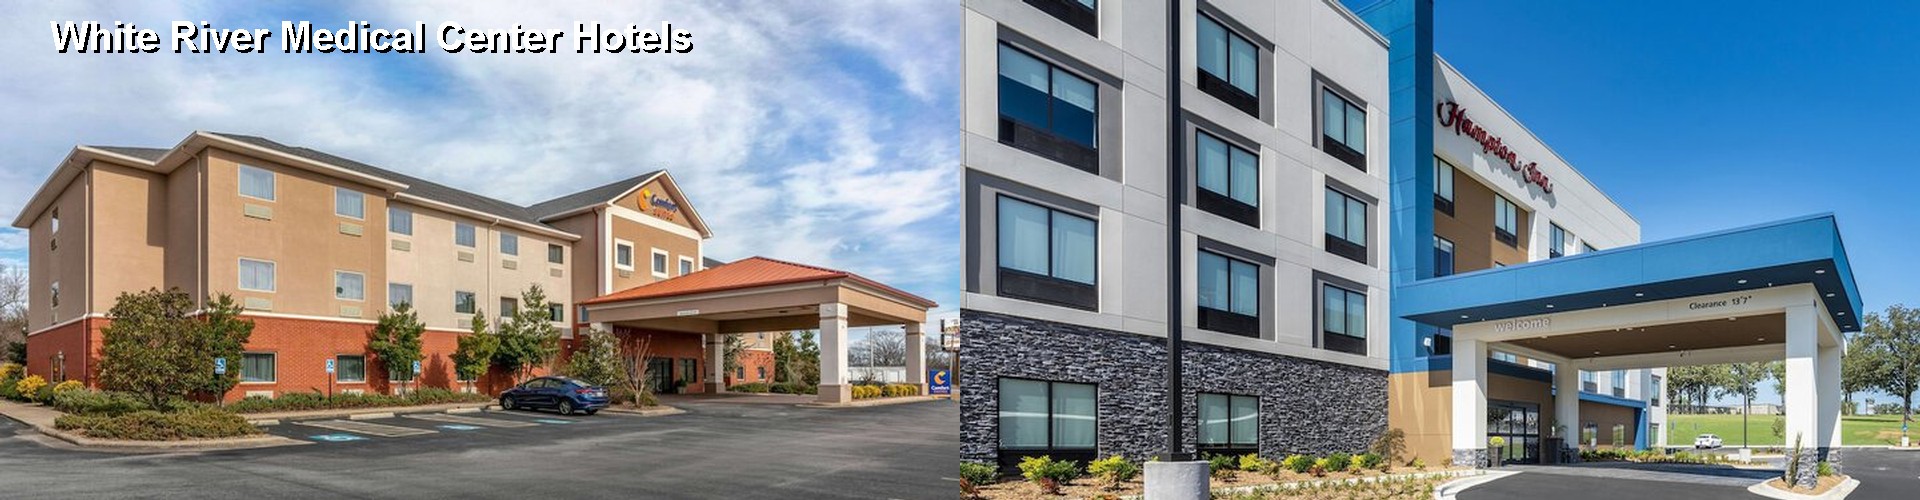 5 Best Hotels near White River Medical Center